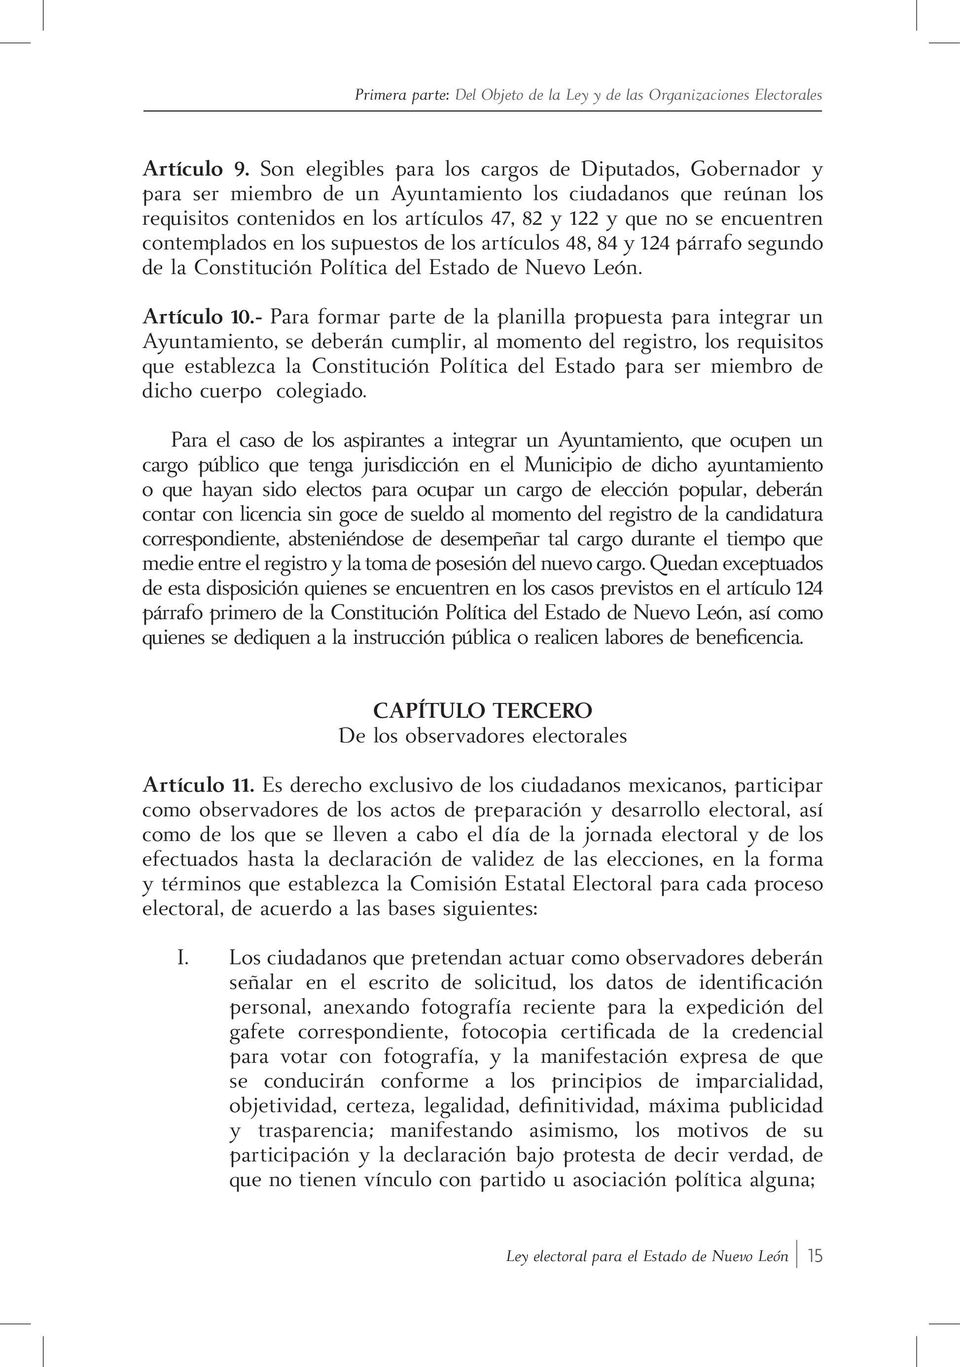 contemplados en los supuestos de los artículos 48, 84 y 124 párrafo segundo de la Constitución Política del Estado de Nuevo León. Artículo 10.